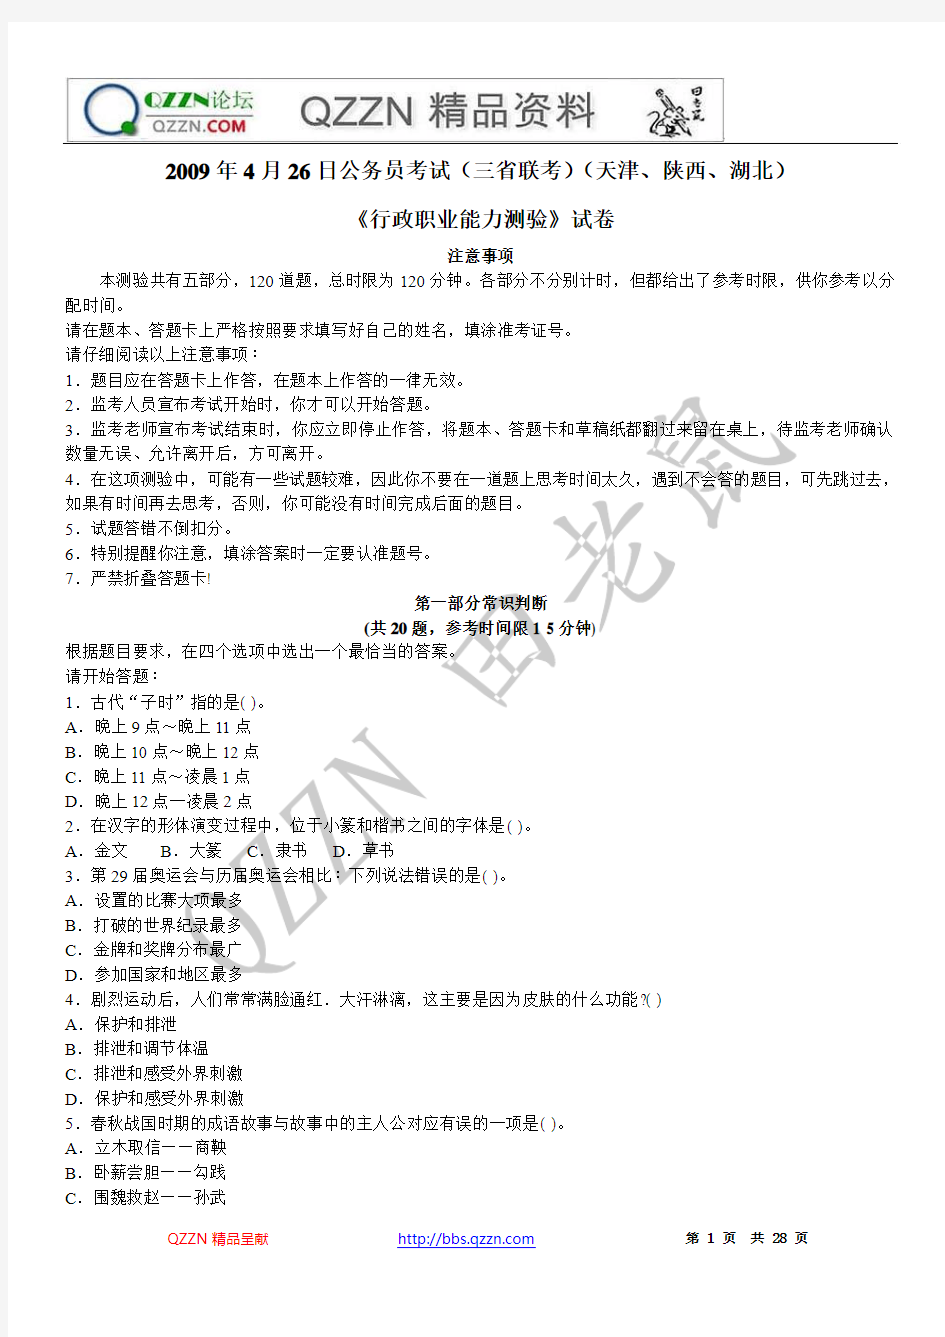 2009年4月26日公务员考试(三省联考)行测真题及答案解析(天津、陕西、湖北)--错44